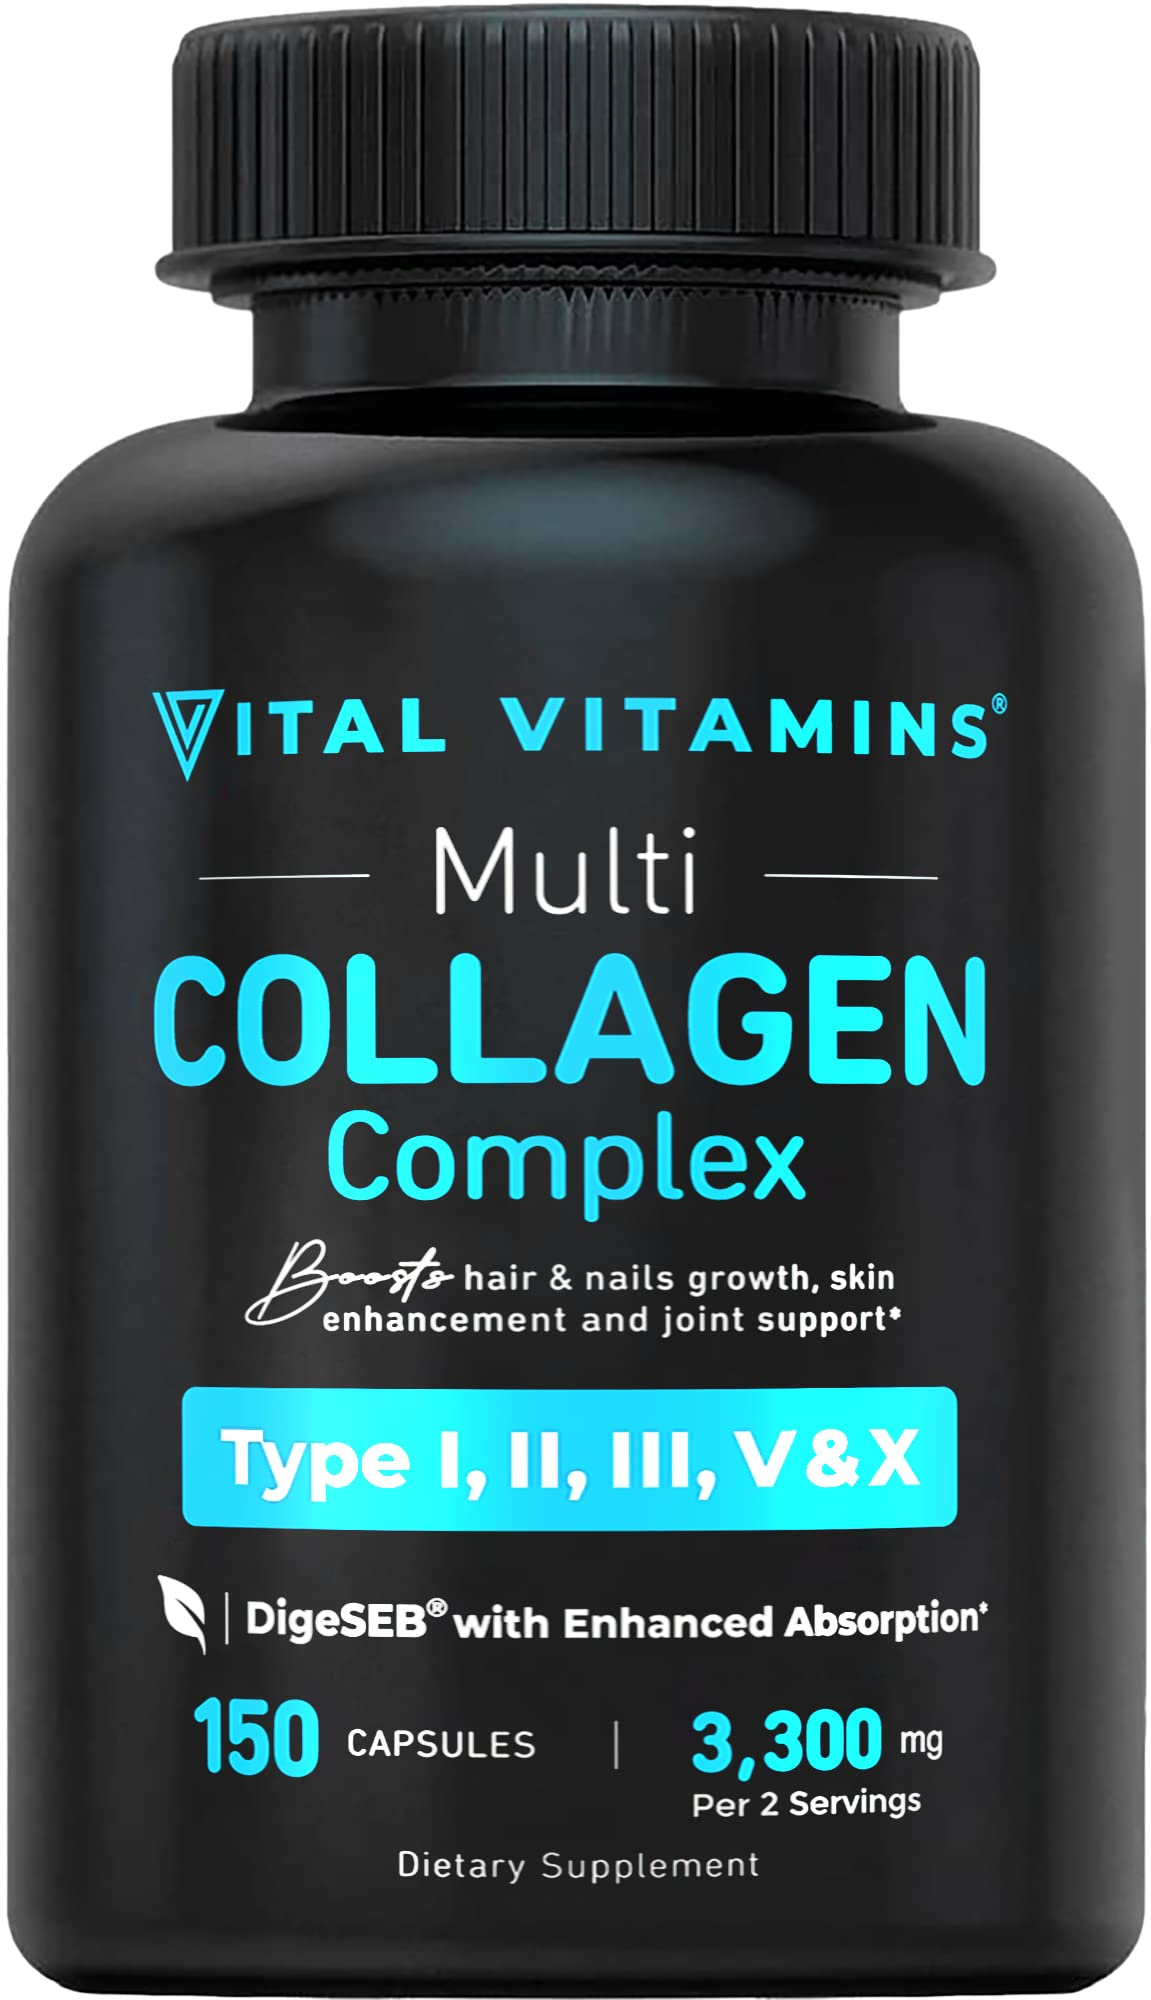 Vital Vitamins Multi Collagen Complex